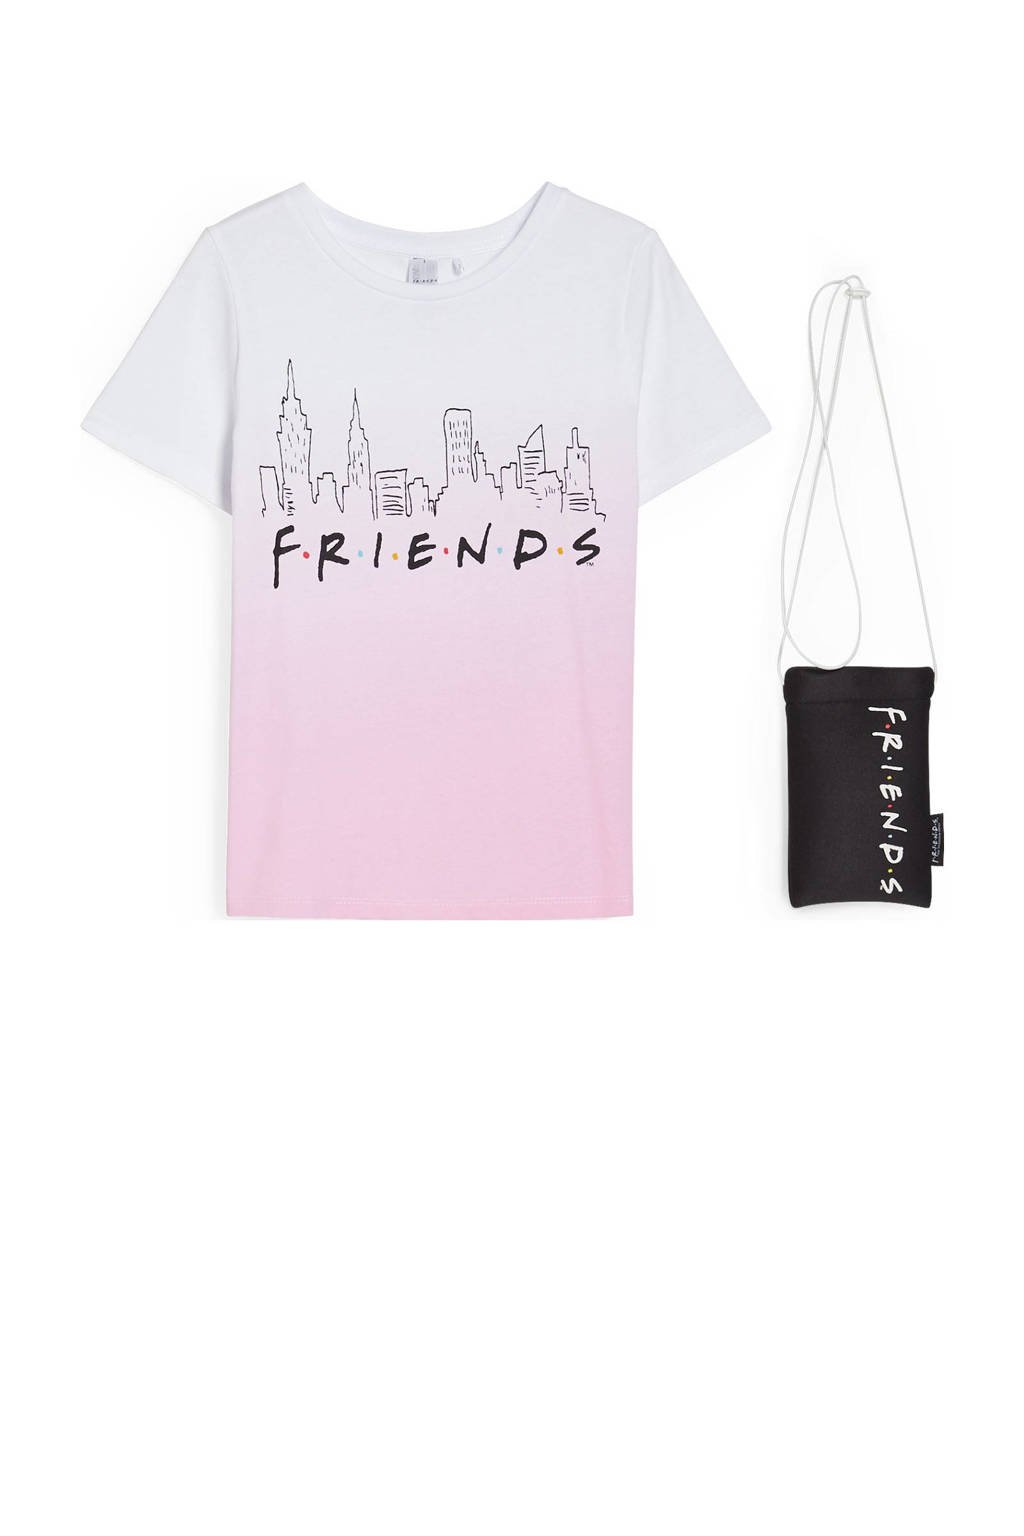 C&A Friends T-shirt + tasje Friends lichtroze/wit